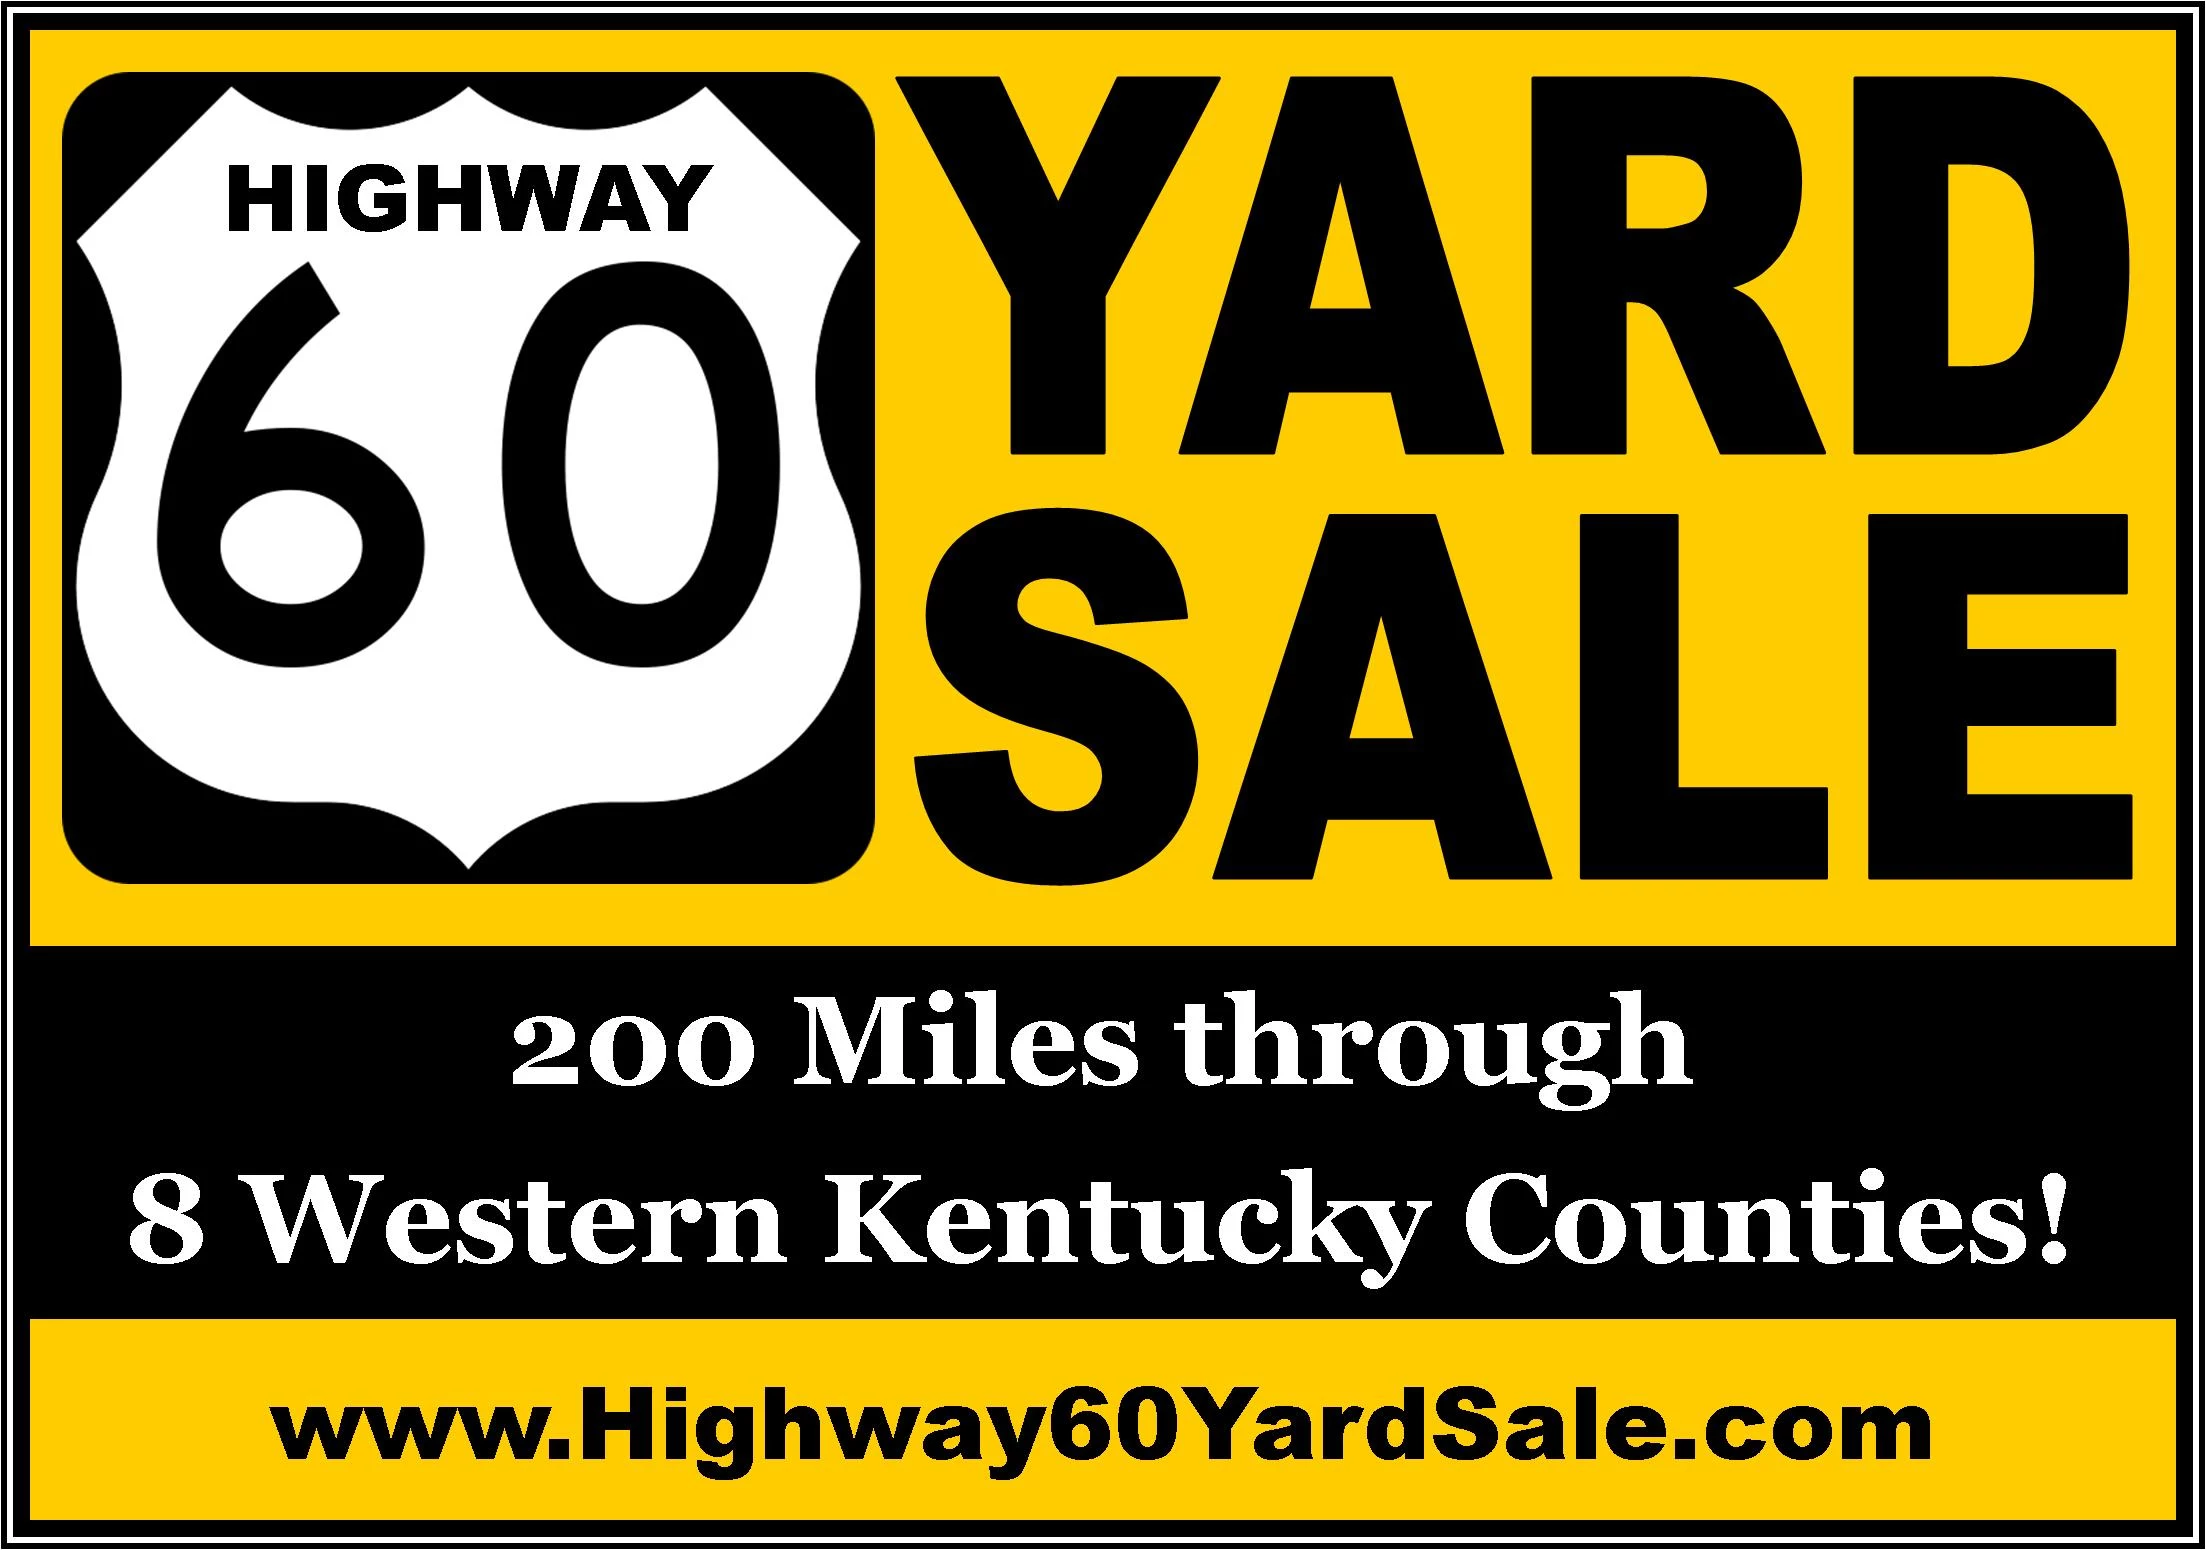 Highway 60 Yard Sale WBKR